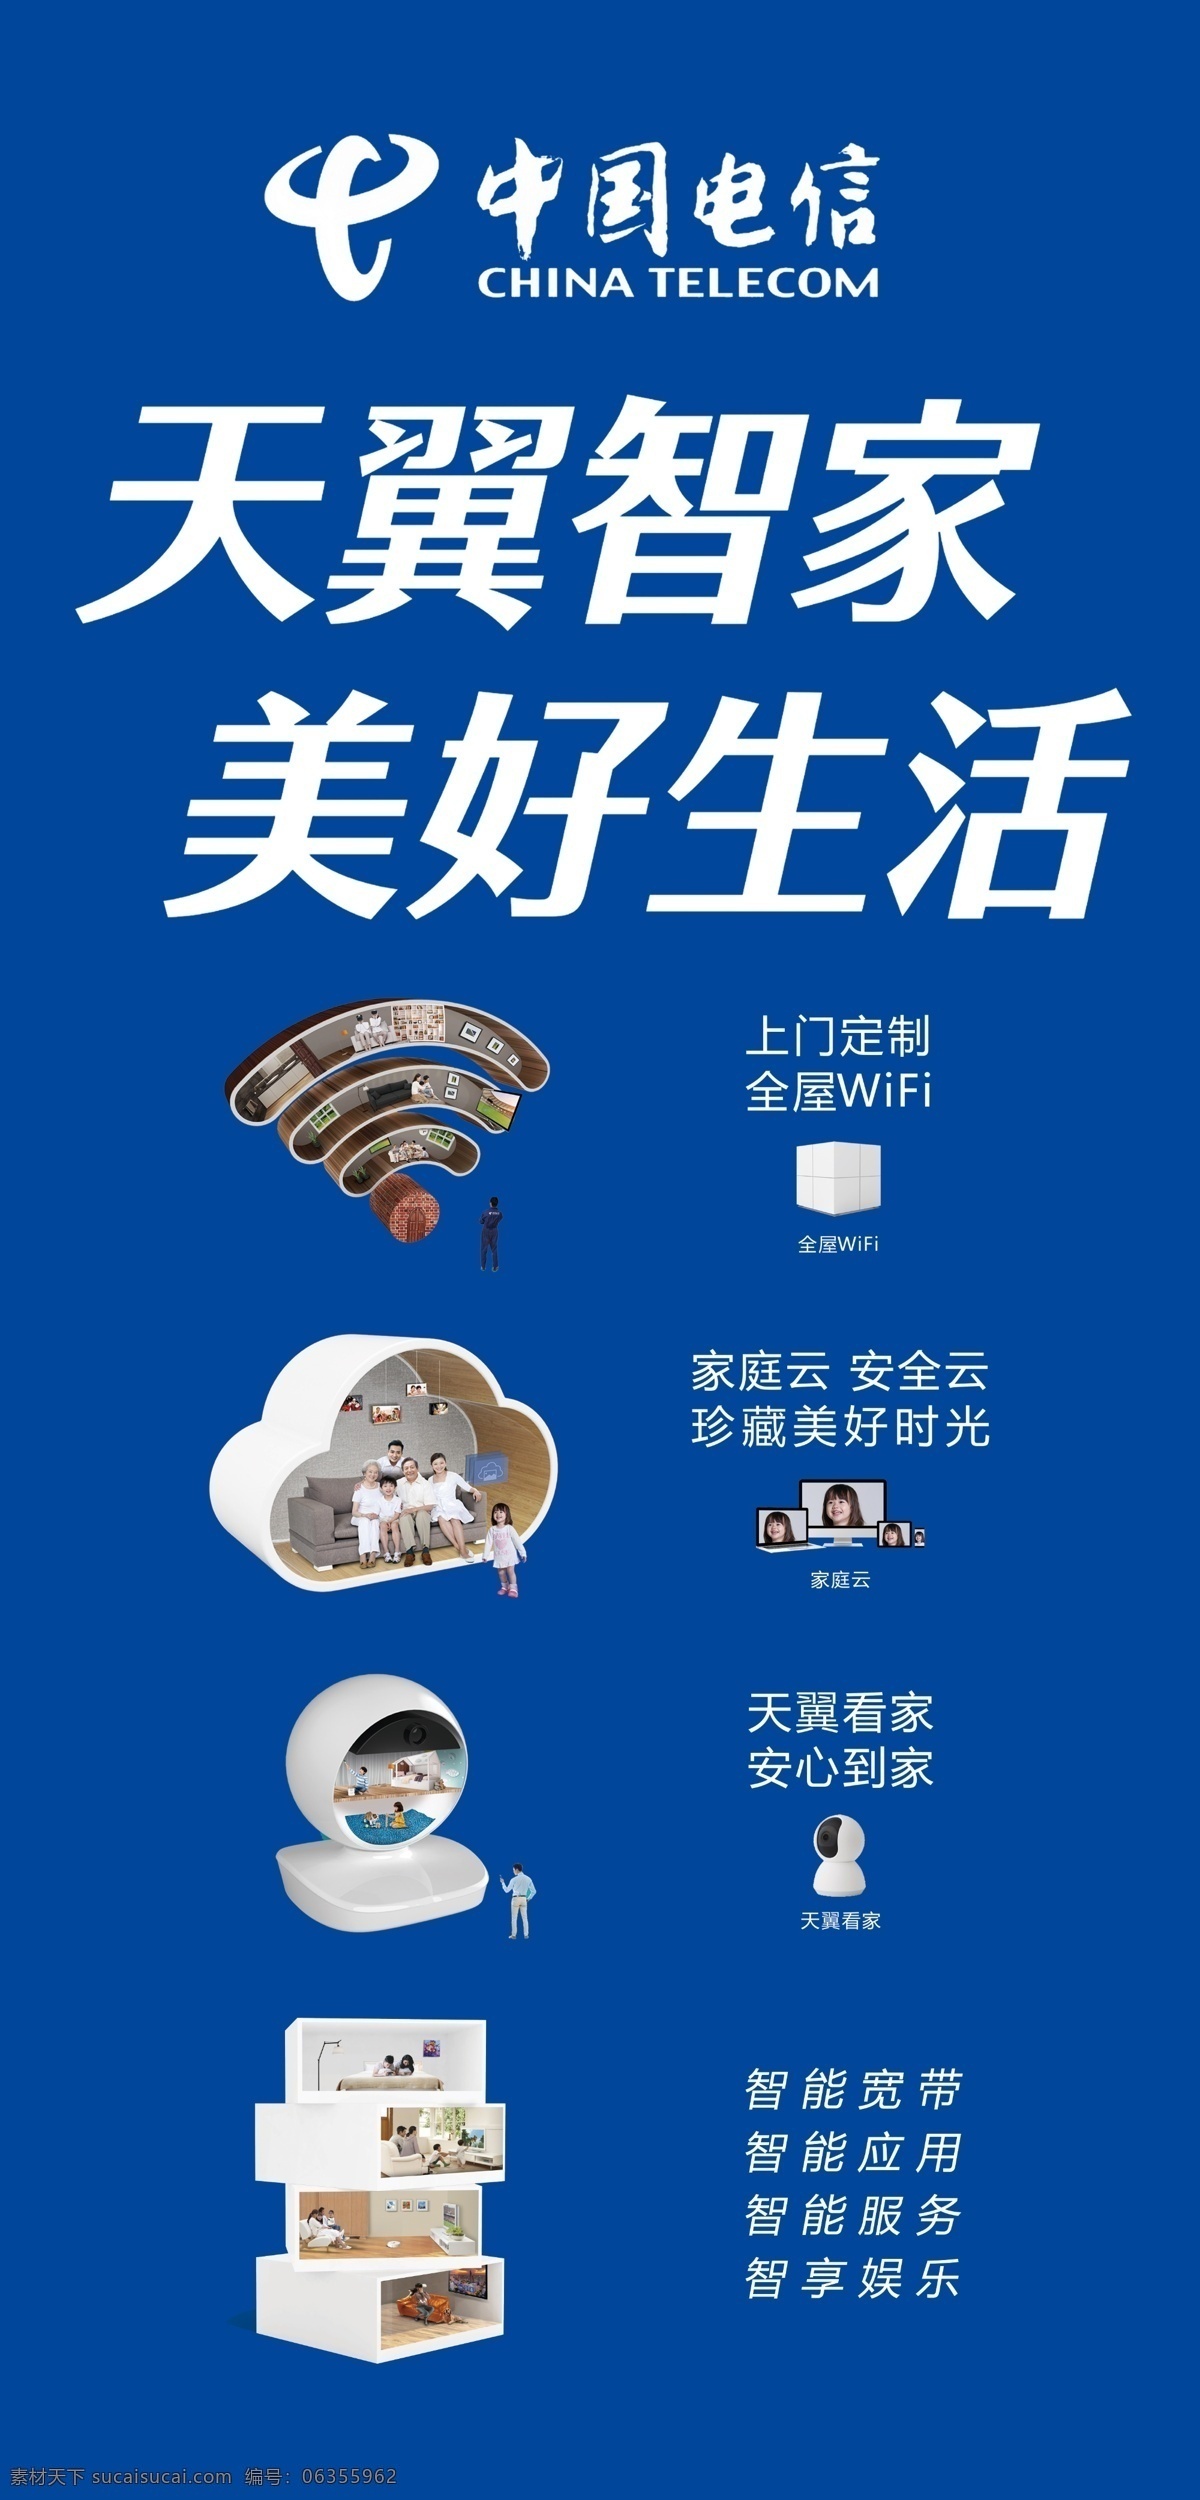 中国电信 巨型 宣传画 电信 天翼智家 家庭云 智能宽带 天翼看家 生活百科